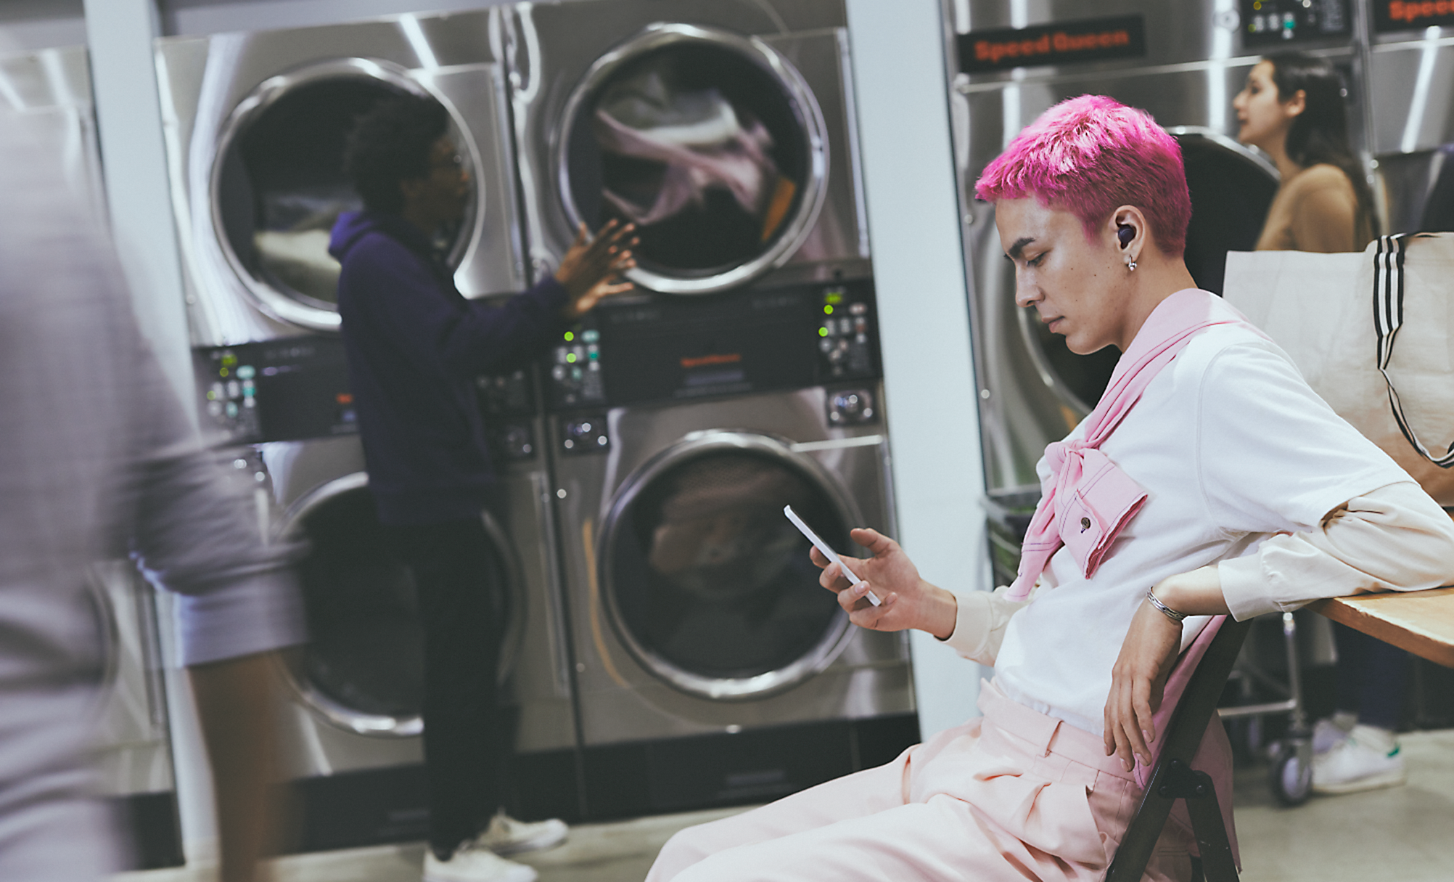 Kép egy mosodában ülő személyről, aki a telefonját nézi, és WF-C700N vezeték nélküli zajszűrő fülhallgatót visel.